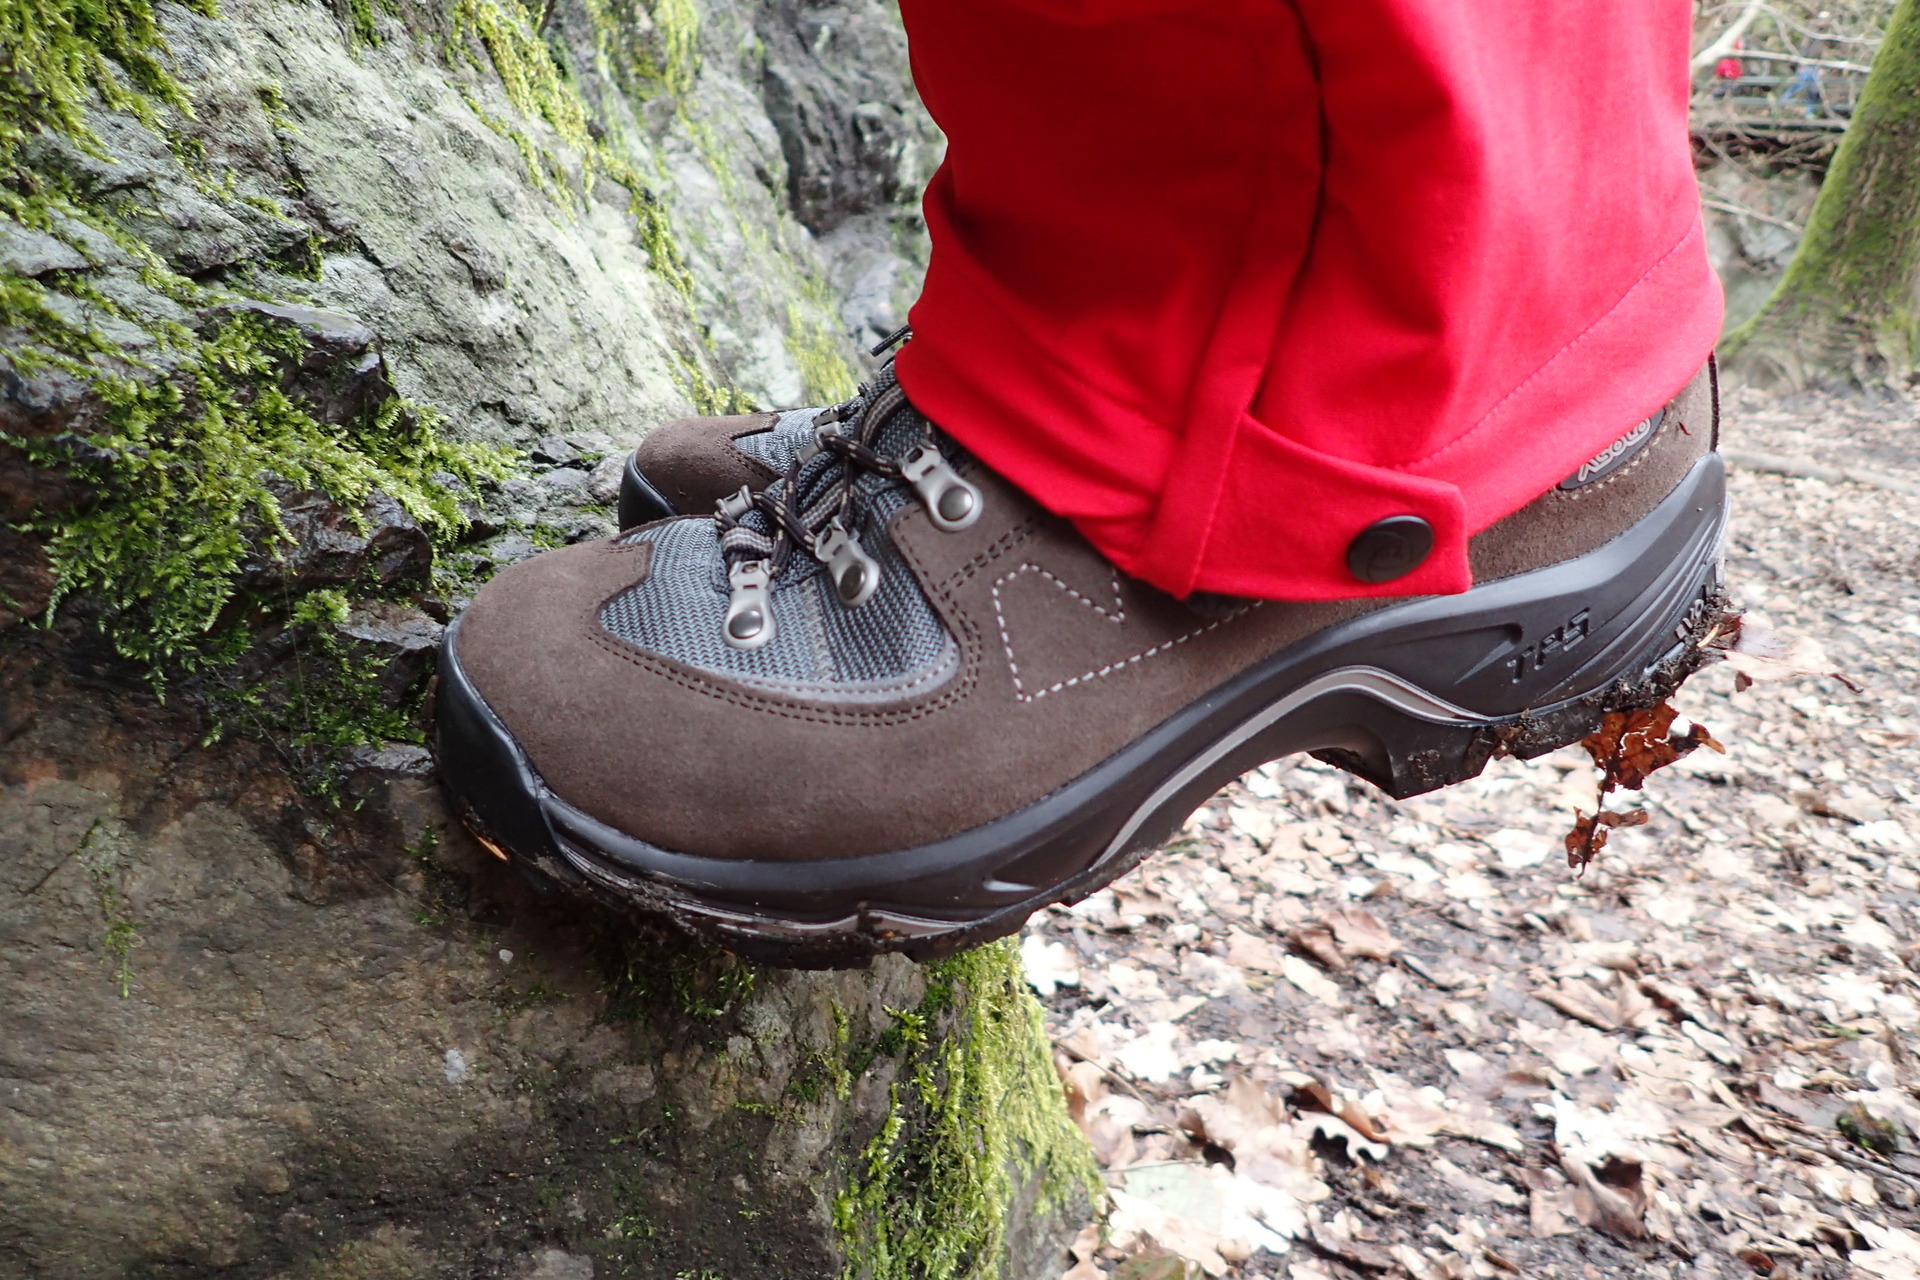 Zkouška tuhosti celé boty na skalním stupu ferraty Vodní brána u Semil.